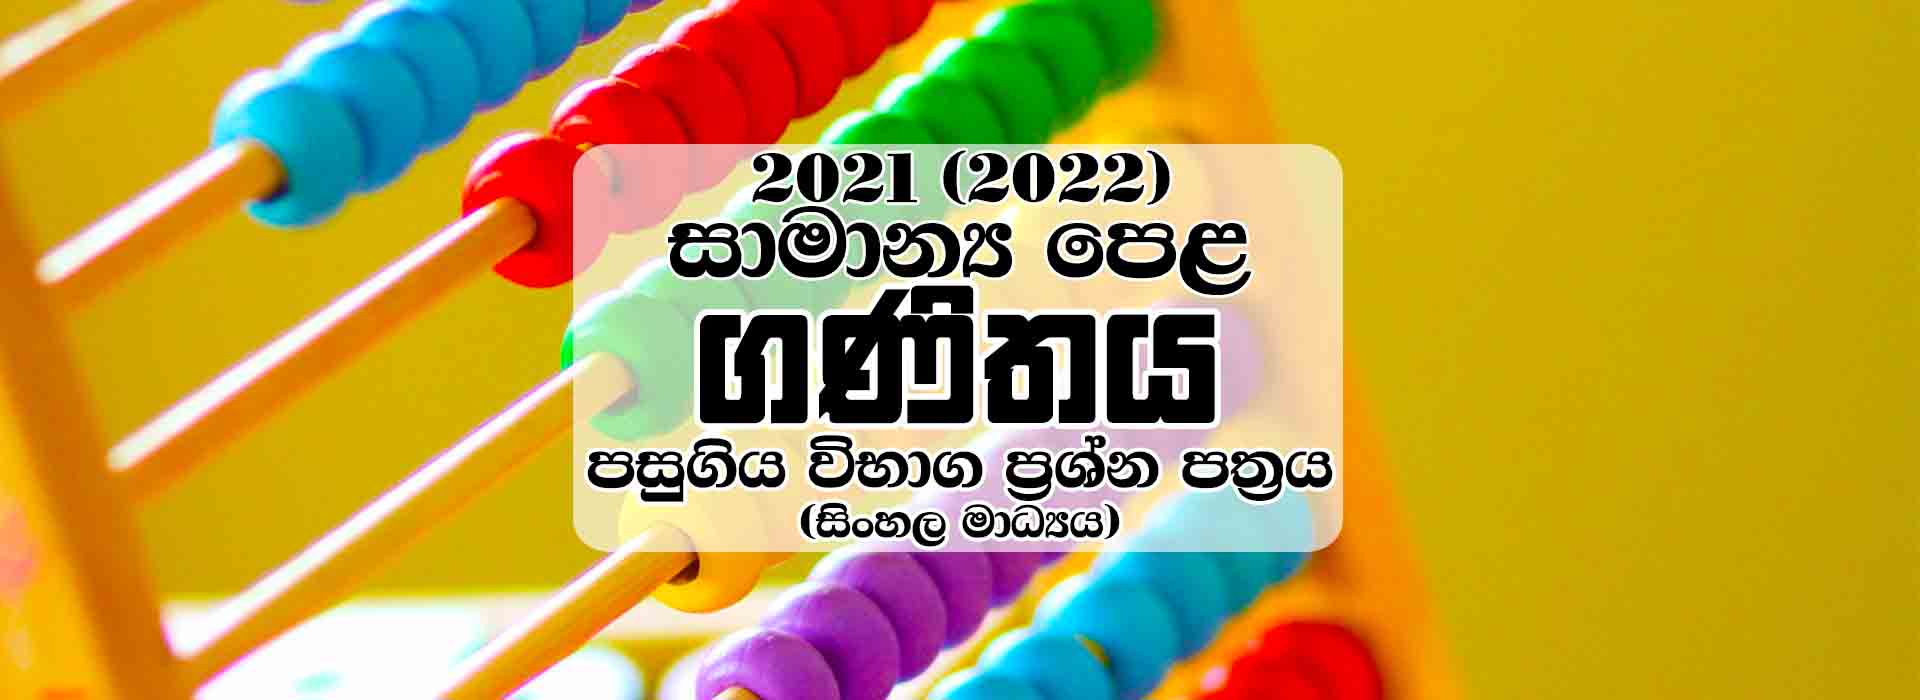 Free Download 2021 (2022) G.C.E Ordinary Level Mathematics Past Paper - Sinhala Medium, 2021 අ.පො.ස. සාමාන්‍ය පෙළ ගණිතය ප්‍රශ්න පත්‍රය